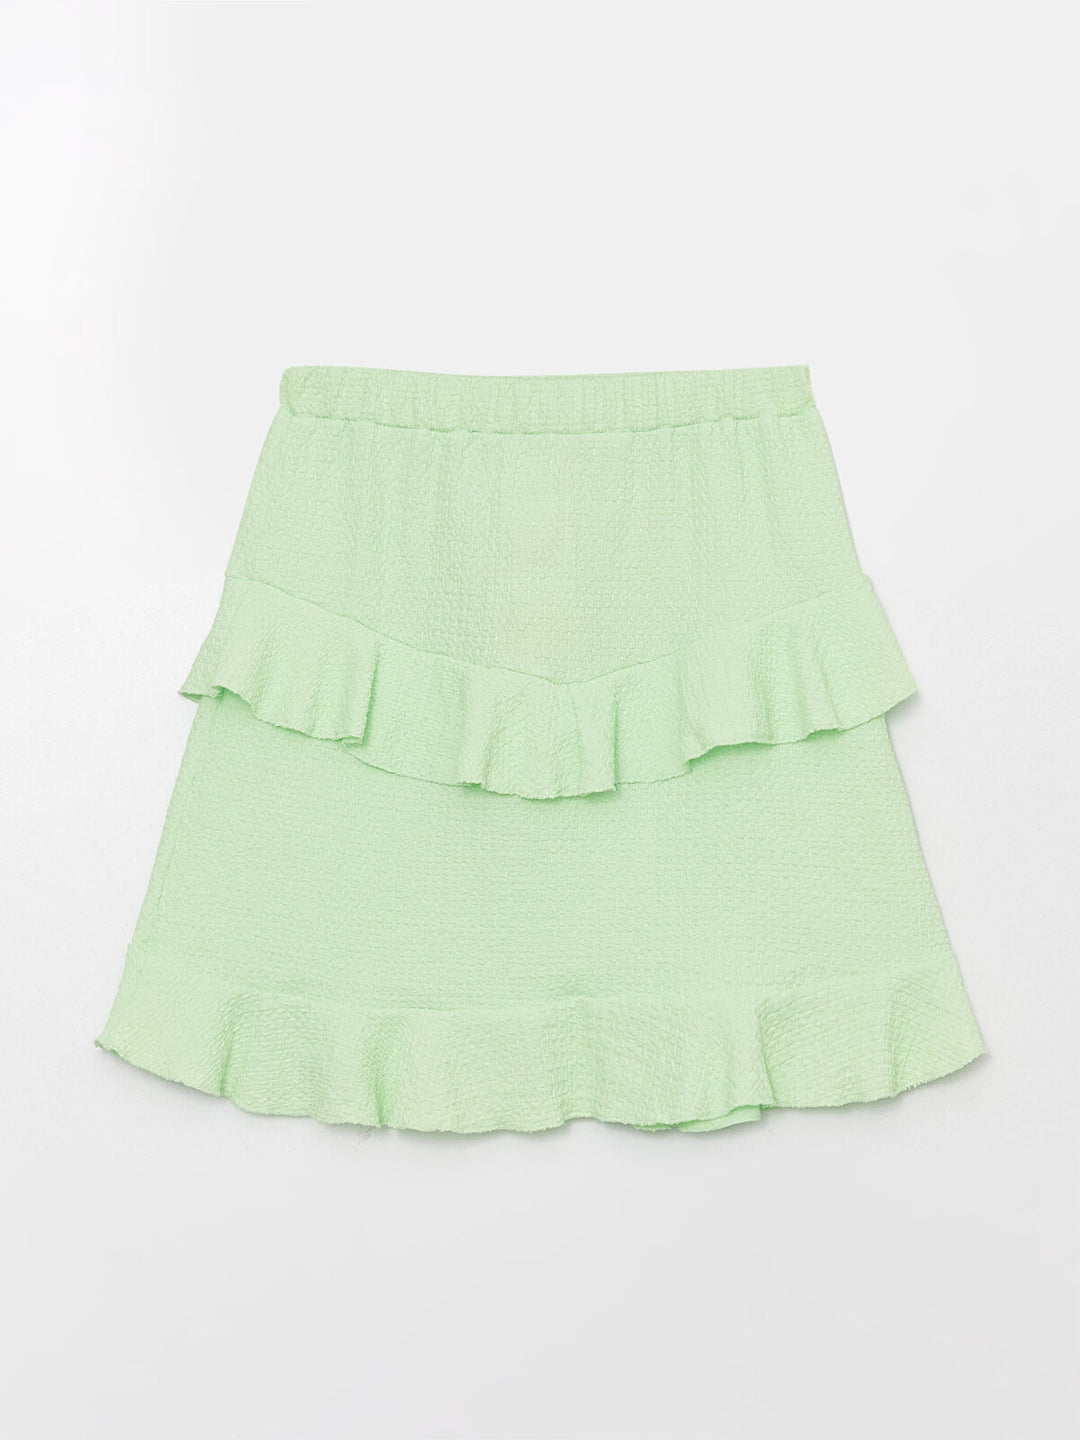 Kids Elastic Waist Frilly Girl Skirt